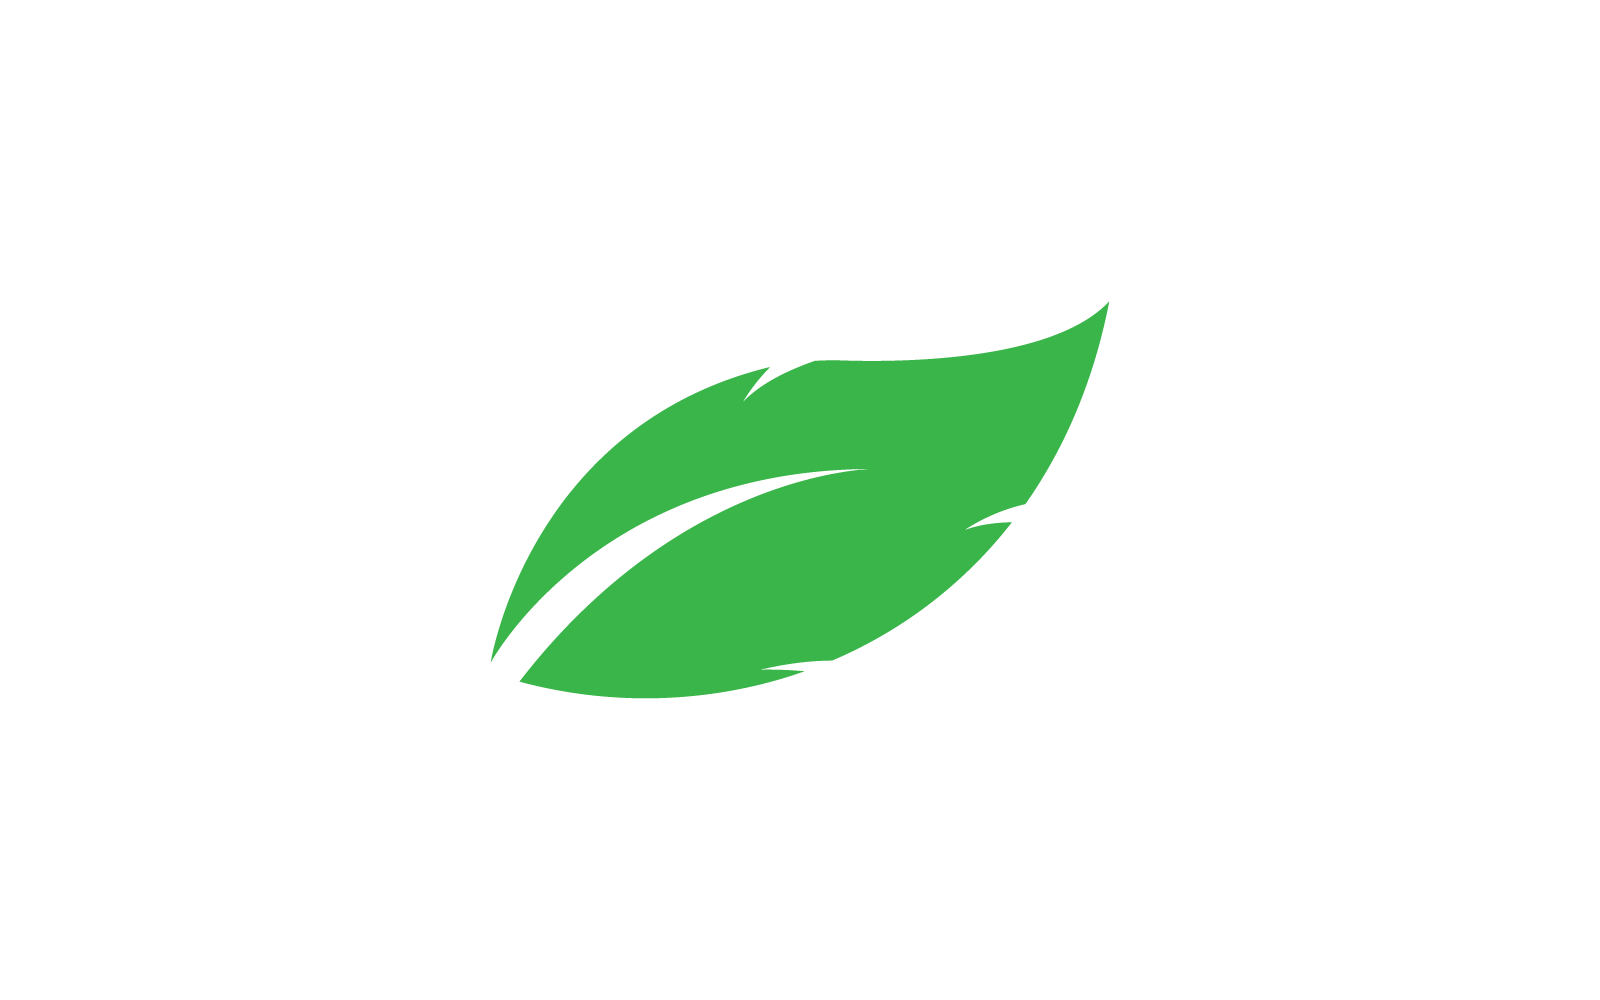 Green leaf design vector illustration nature